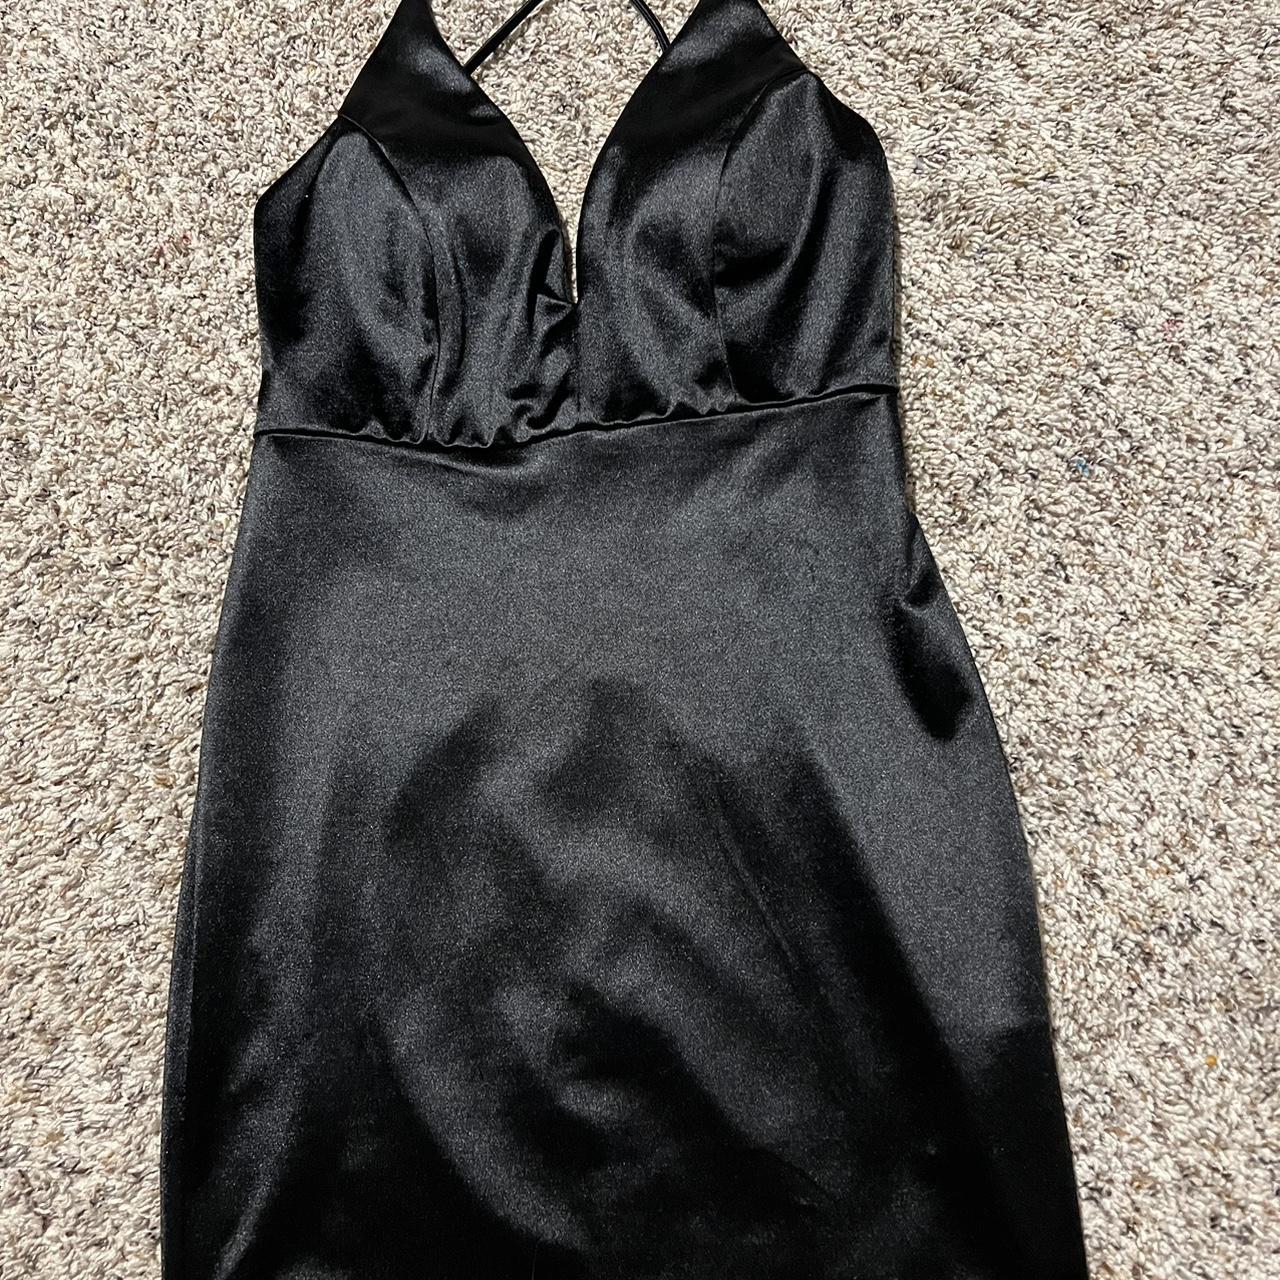 Von Maur black satin mini dress. Low cut ish front - Depop